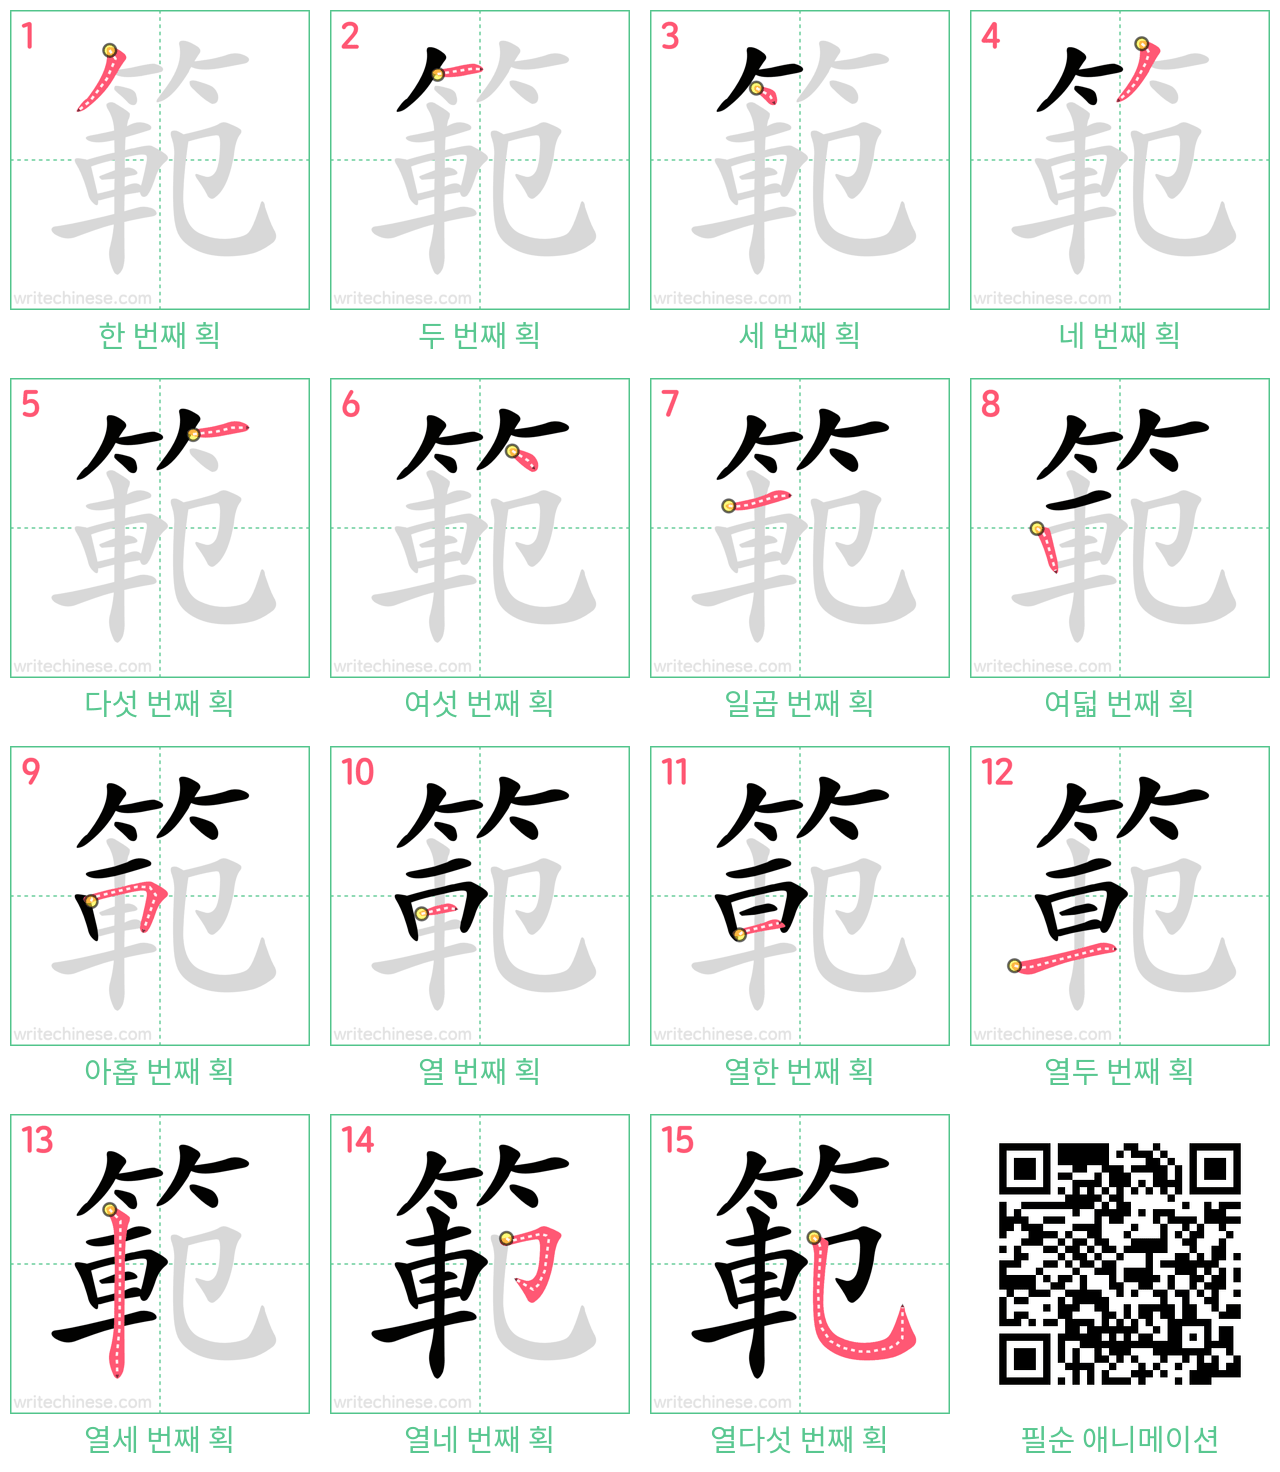 範 step-by-step stroke order diagrams